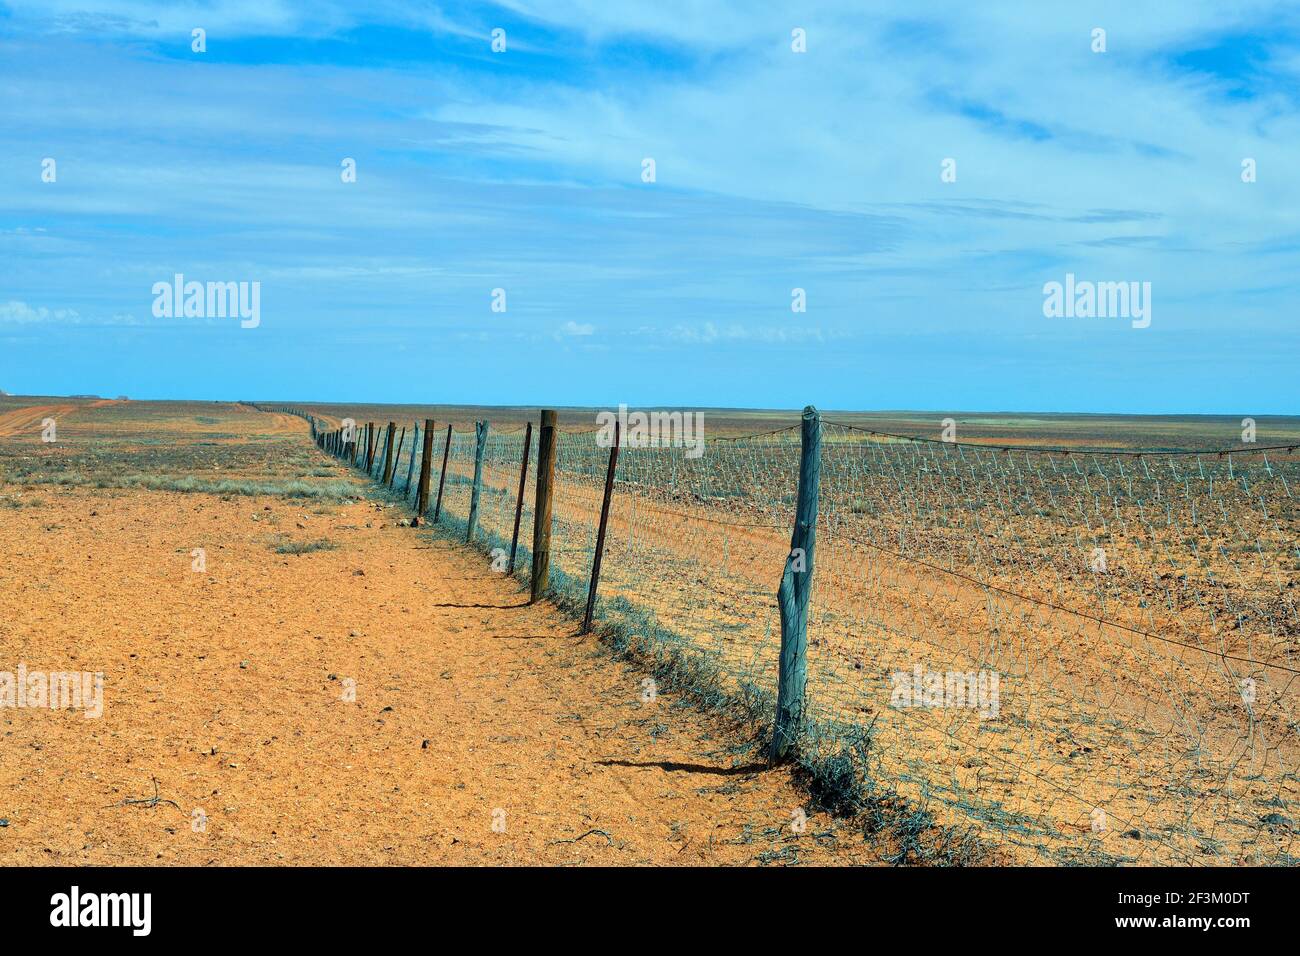 Australien, Hundezaun aka Dingozaun, 5300 km langer Zaun zum Schutz der  Weide für Schafe und Rasseln Stockfotografie - Alamy